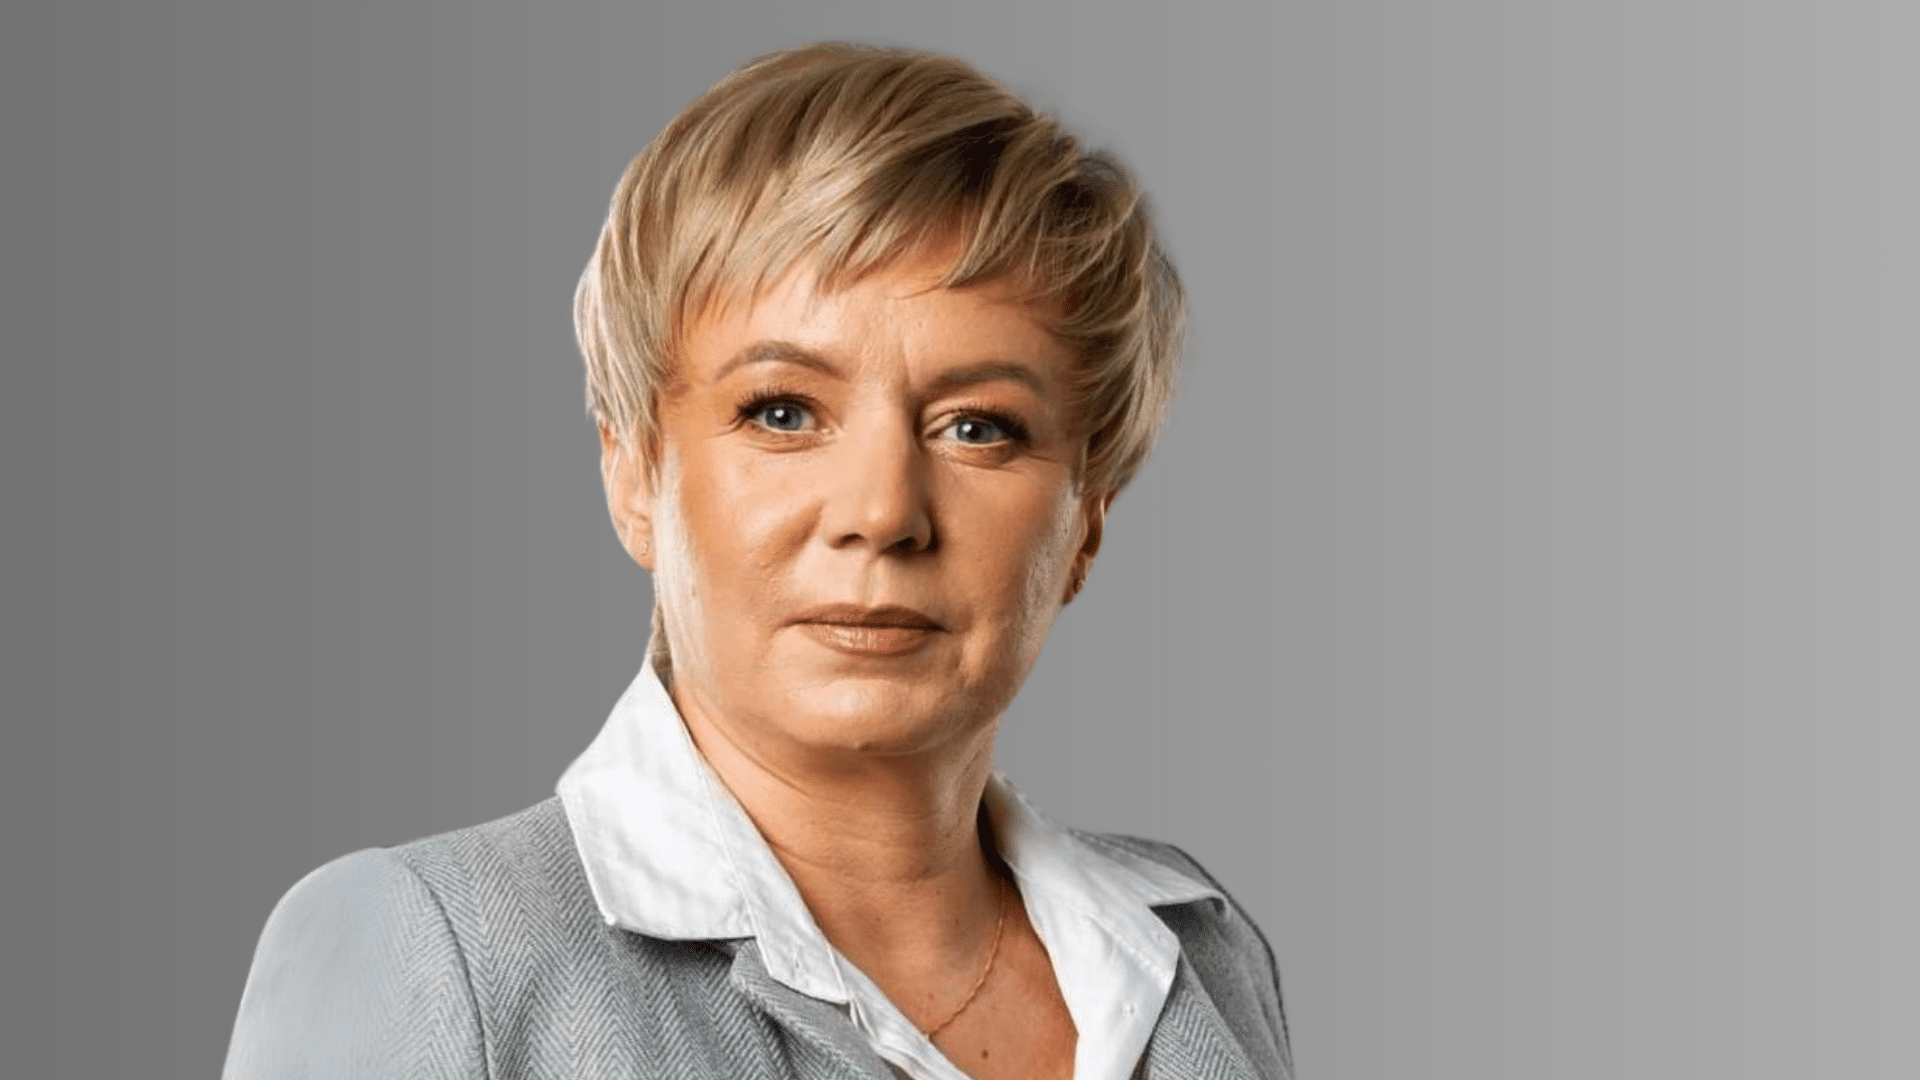 Inwestujmy w przedsiębiorców! – rozmowa z Joanną Grochal, kandydatką do Sejmiku Województwa Warmińsko-Mazurskiego polityka Wiadomości, zemptypost, zPAP